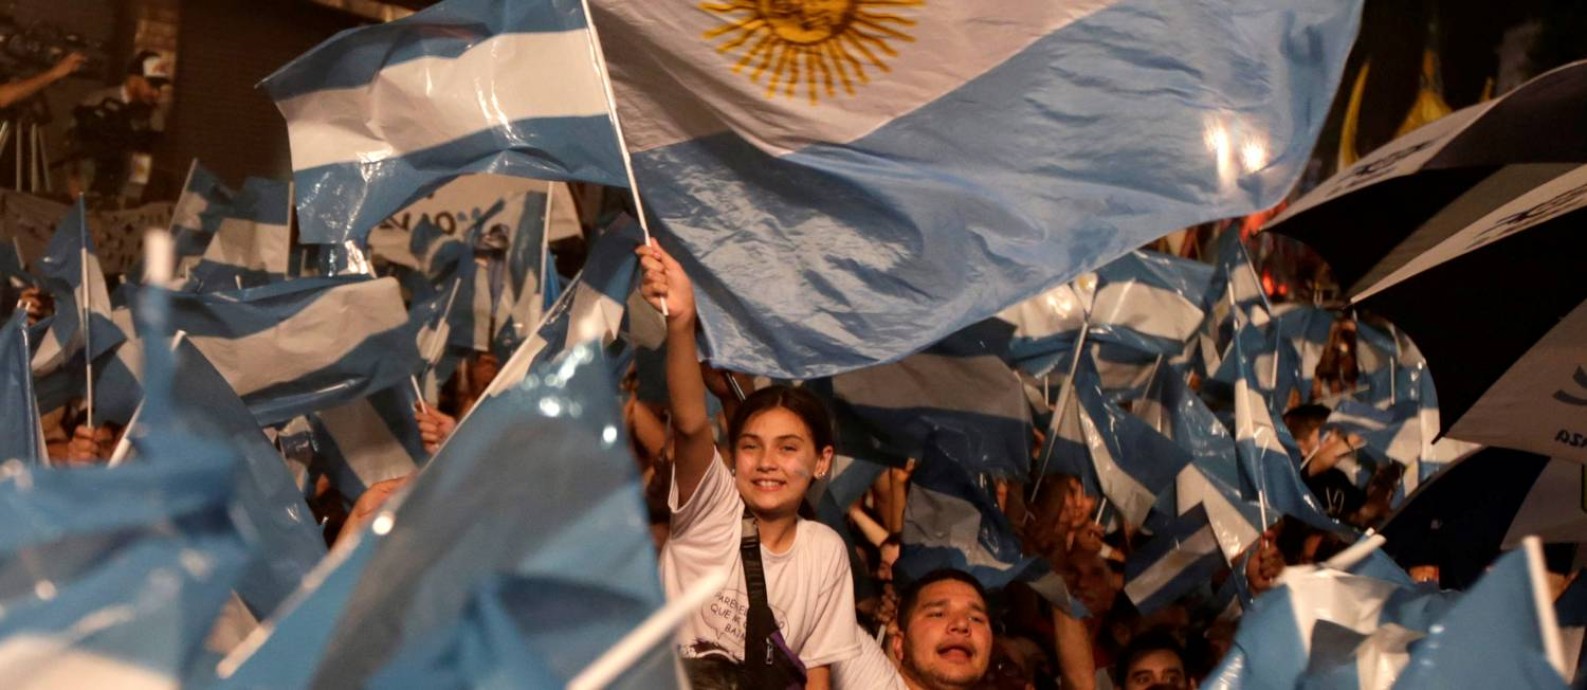 Eleitores de Fernández comemoram a vitória em Buenos Aires Foto: RICARDO MORAES / REUTERS